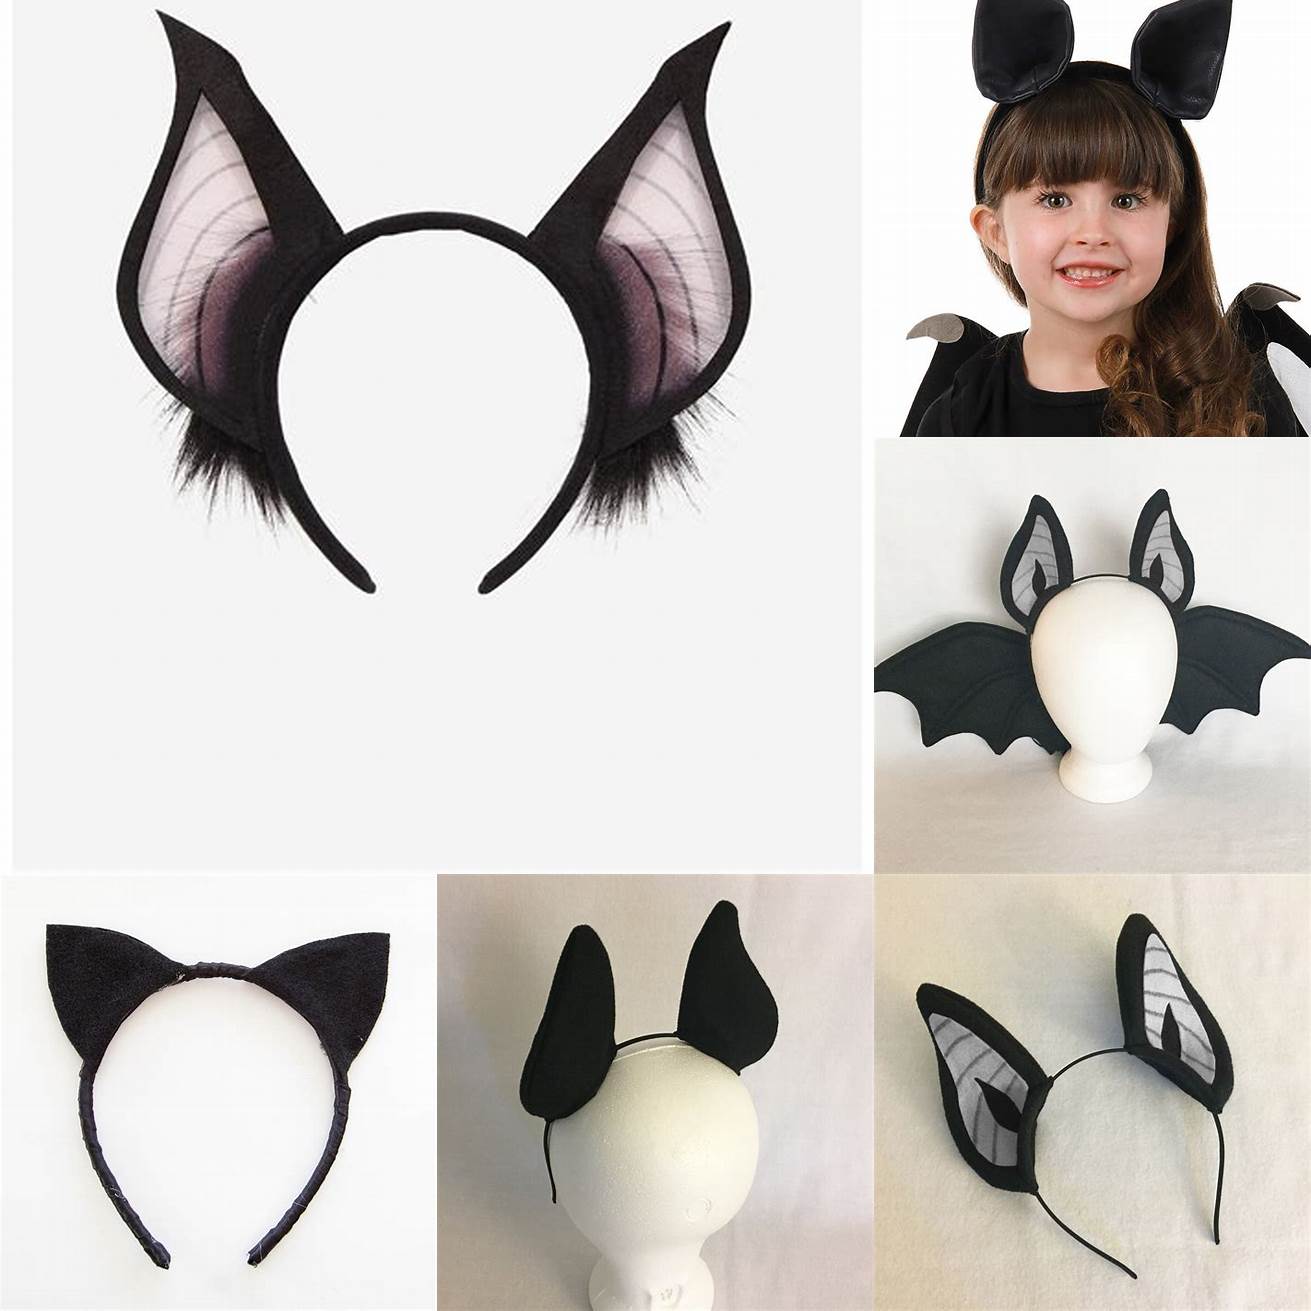 A black bat ear headpiece